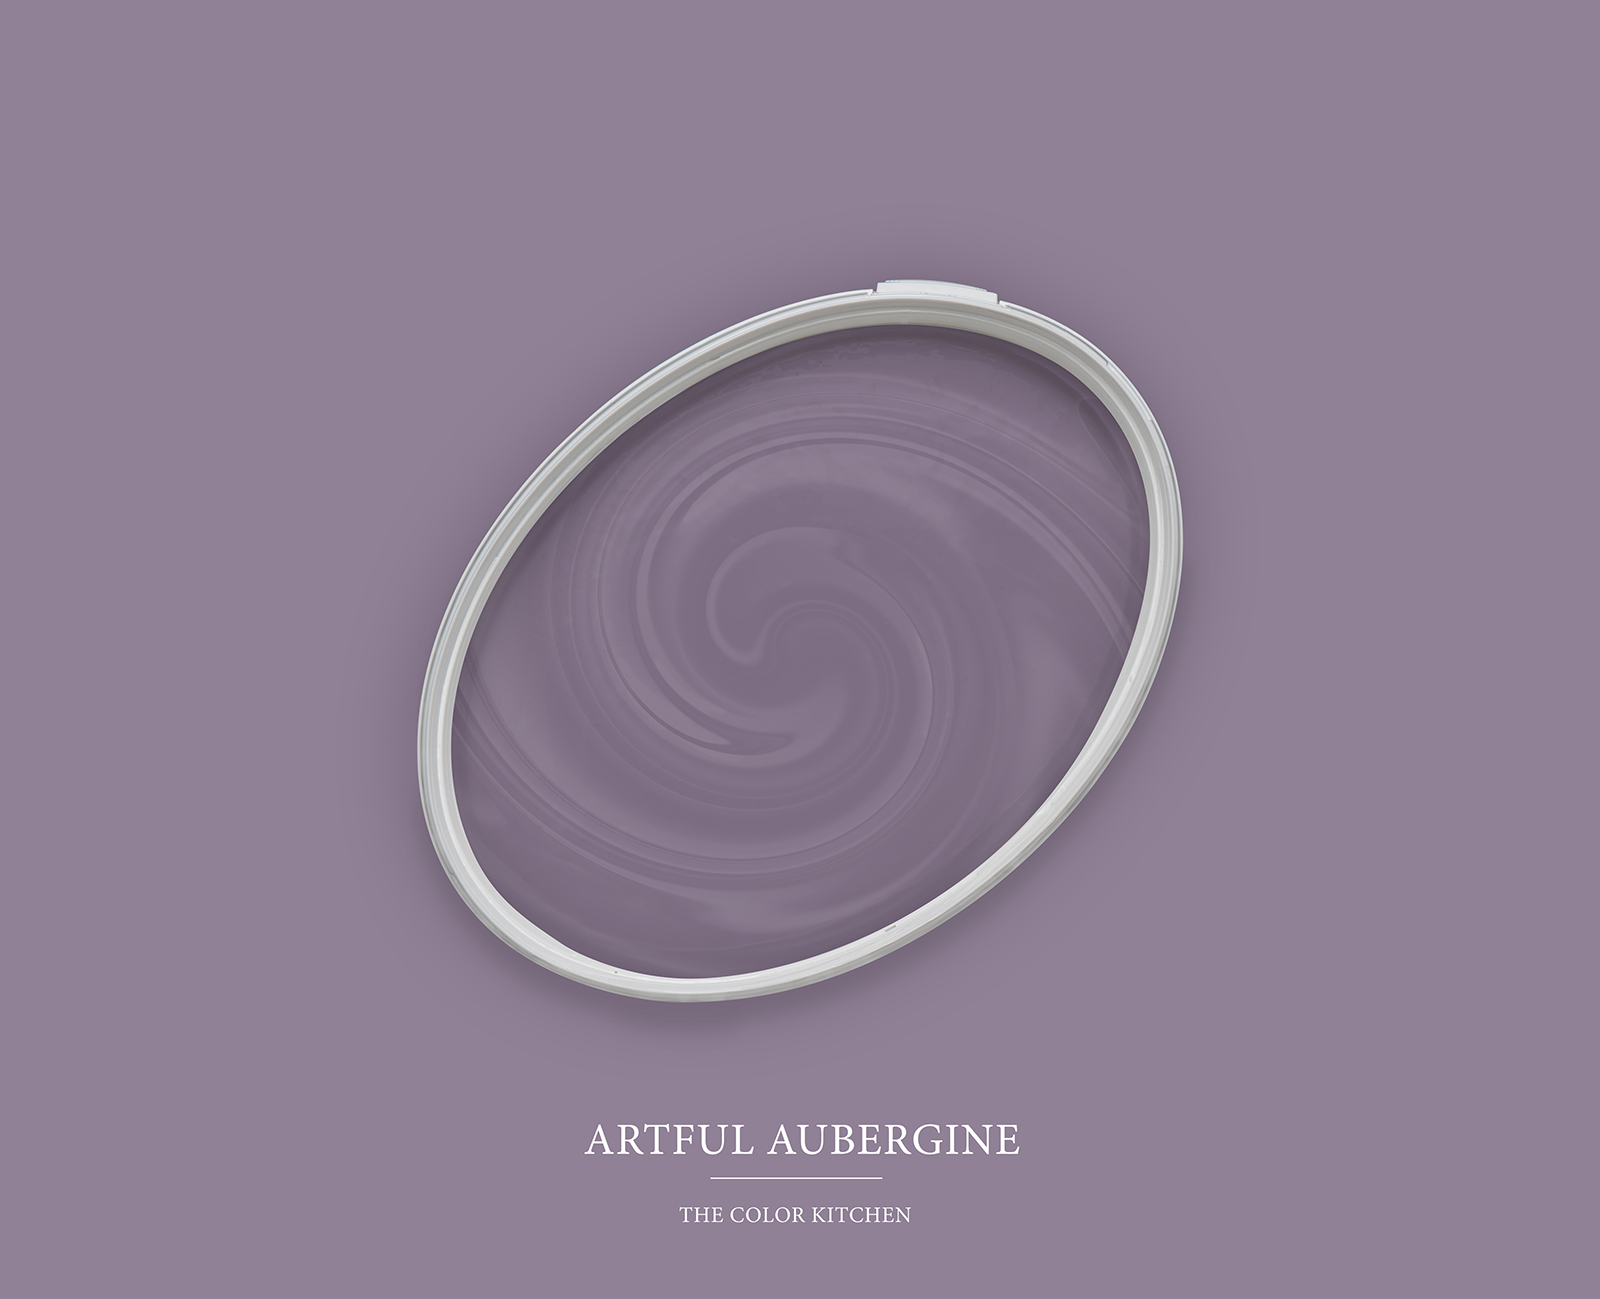         Wandfarbe in kräftigem Violett »Artful Aubergine« TCK2006 – 2,5 Liter
    